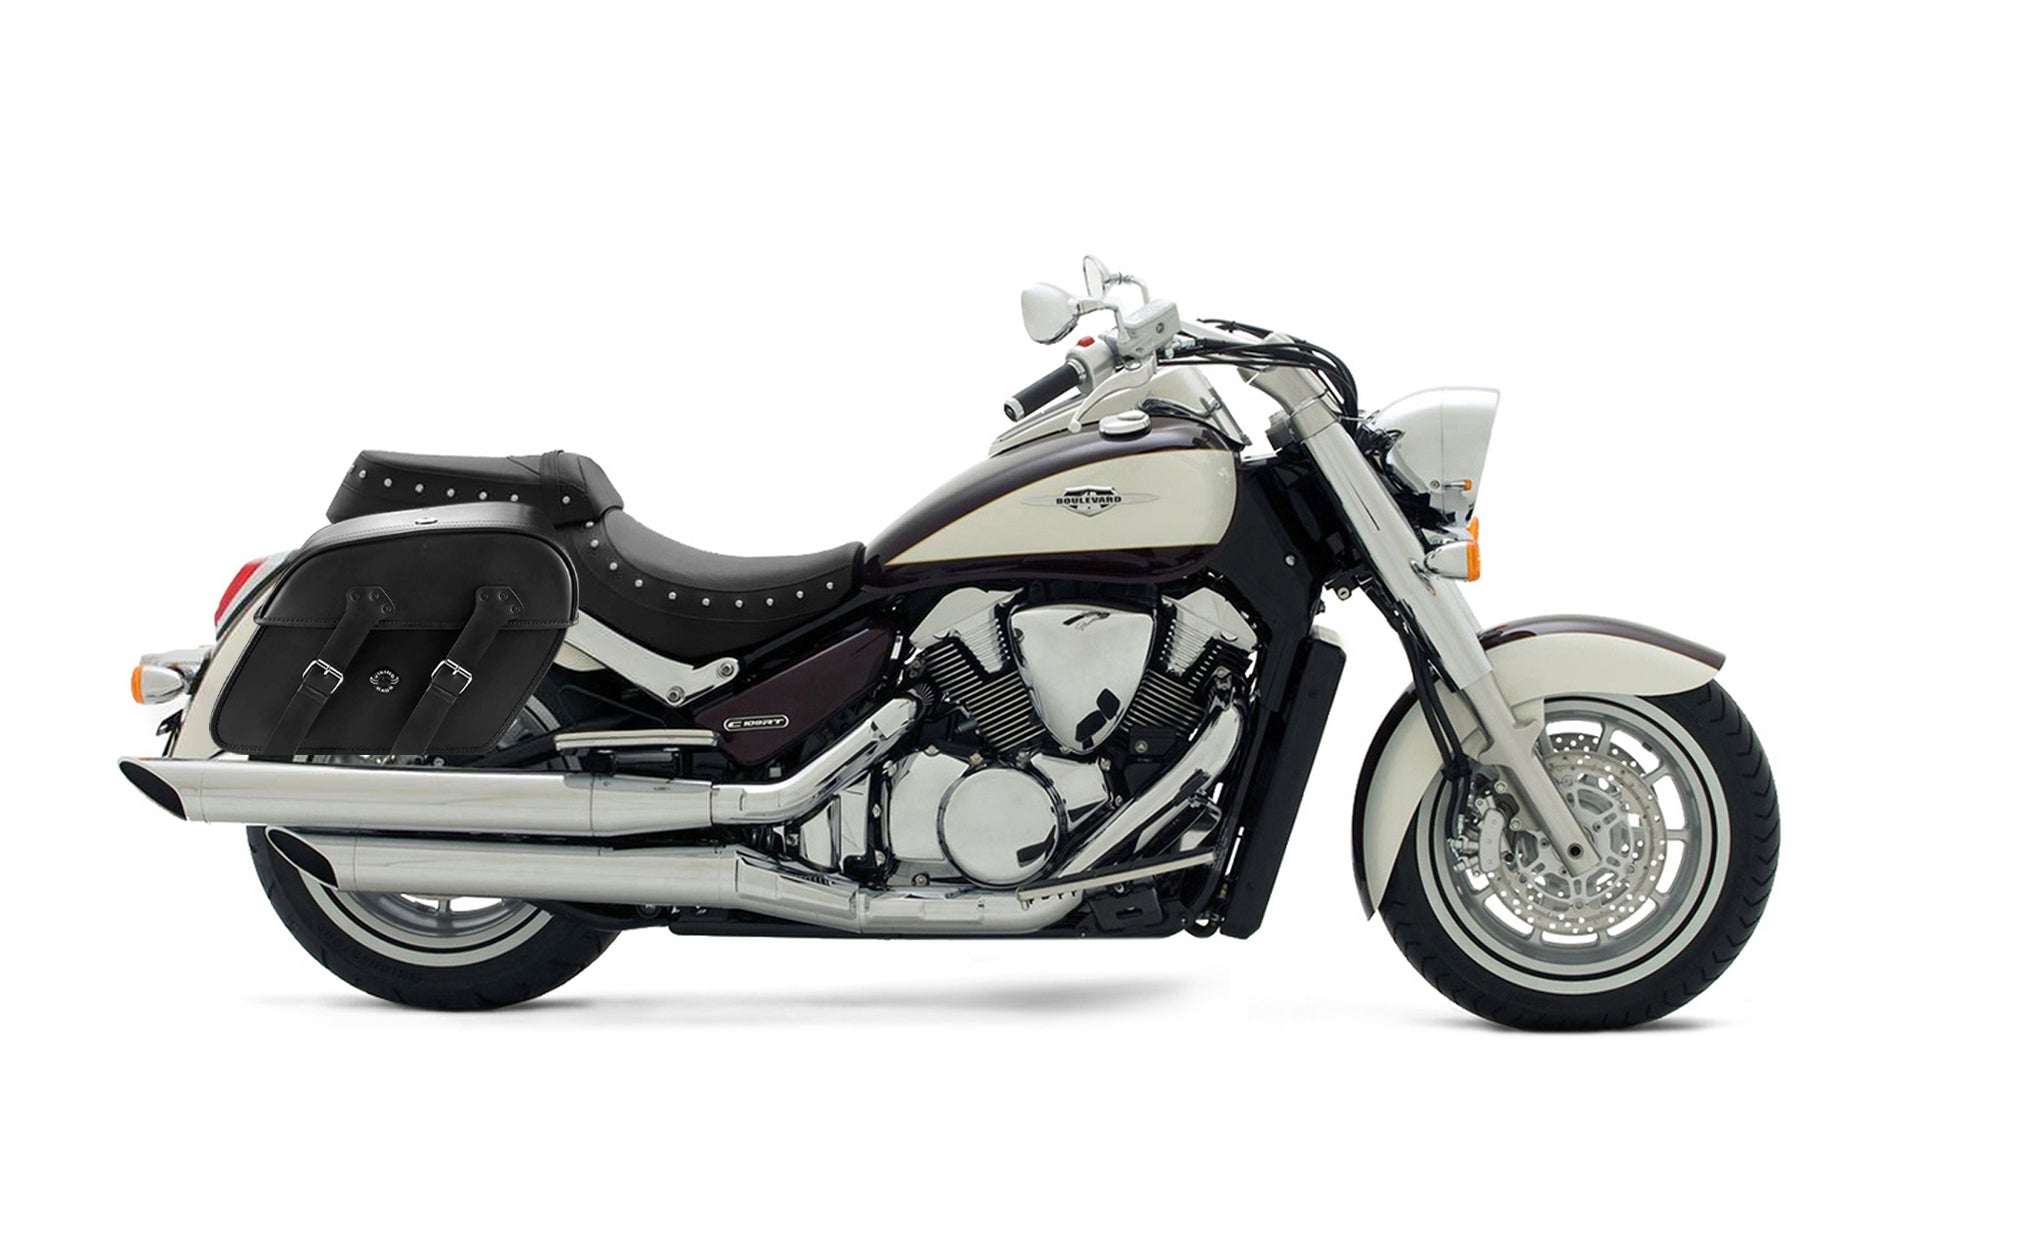 Viking Raven Large Suzuki Boulevard C109 Motorcycle Leather Saddlebags on Bike Photo @expand